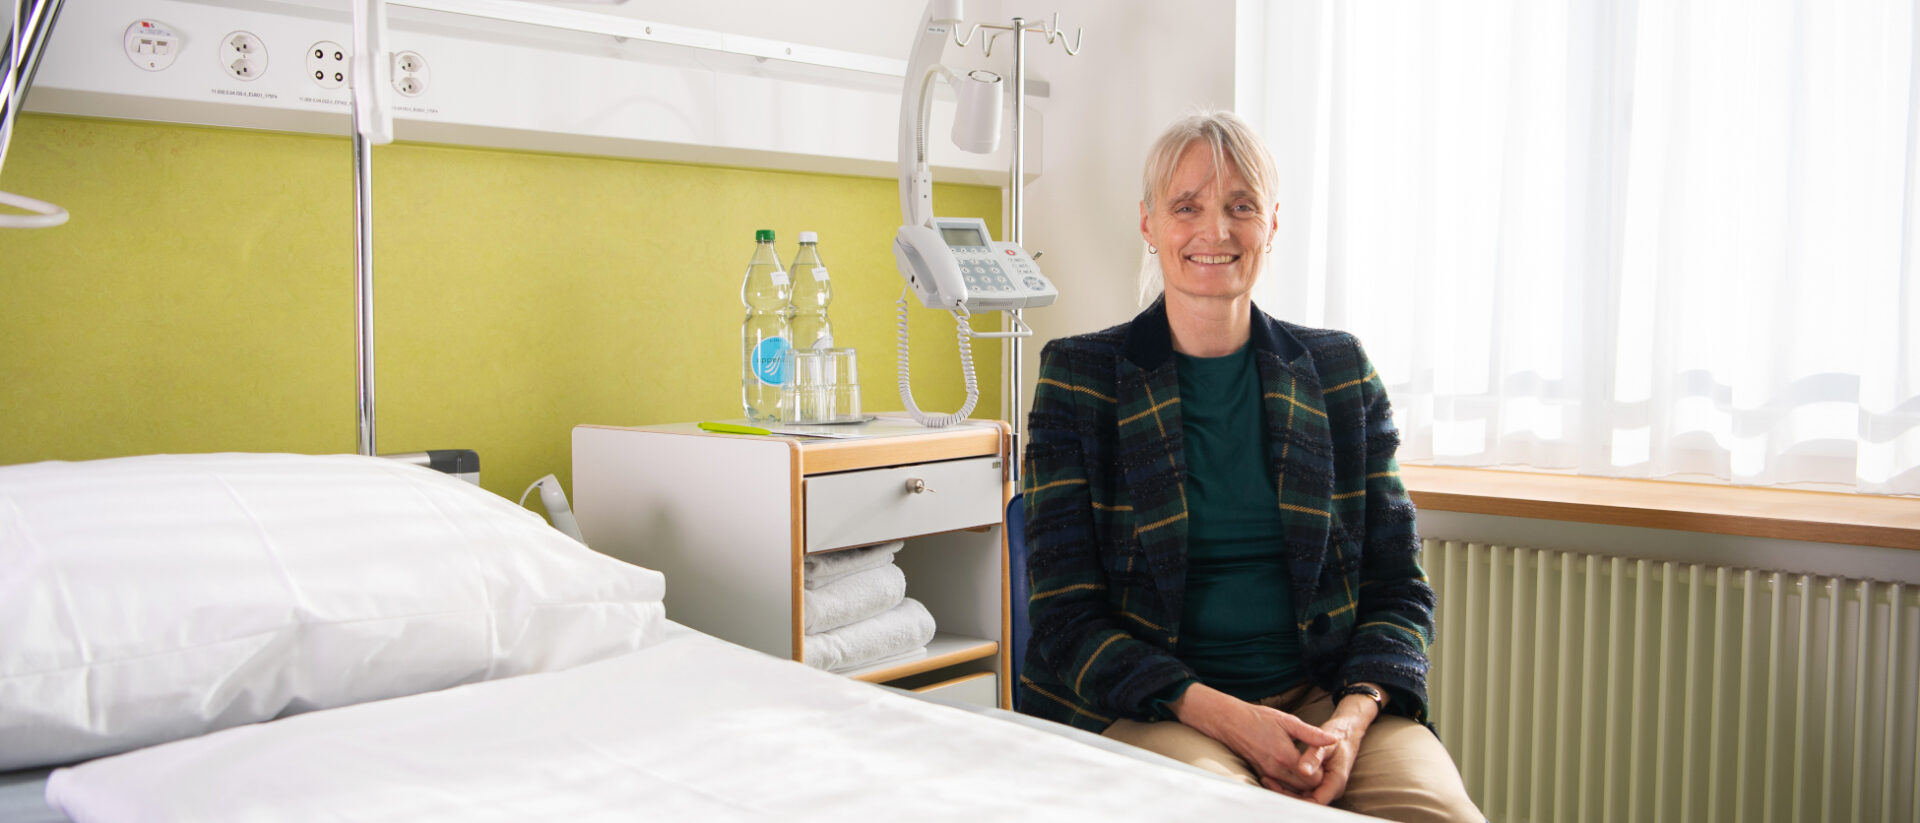 Die Sterbeforscherin Monika Renz arbeitet als Psychoonkologin am Kantonsspital St. Gallen.